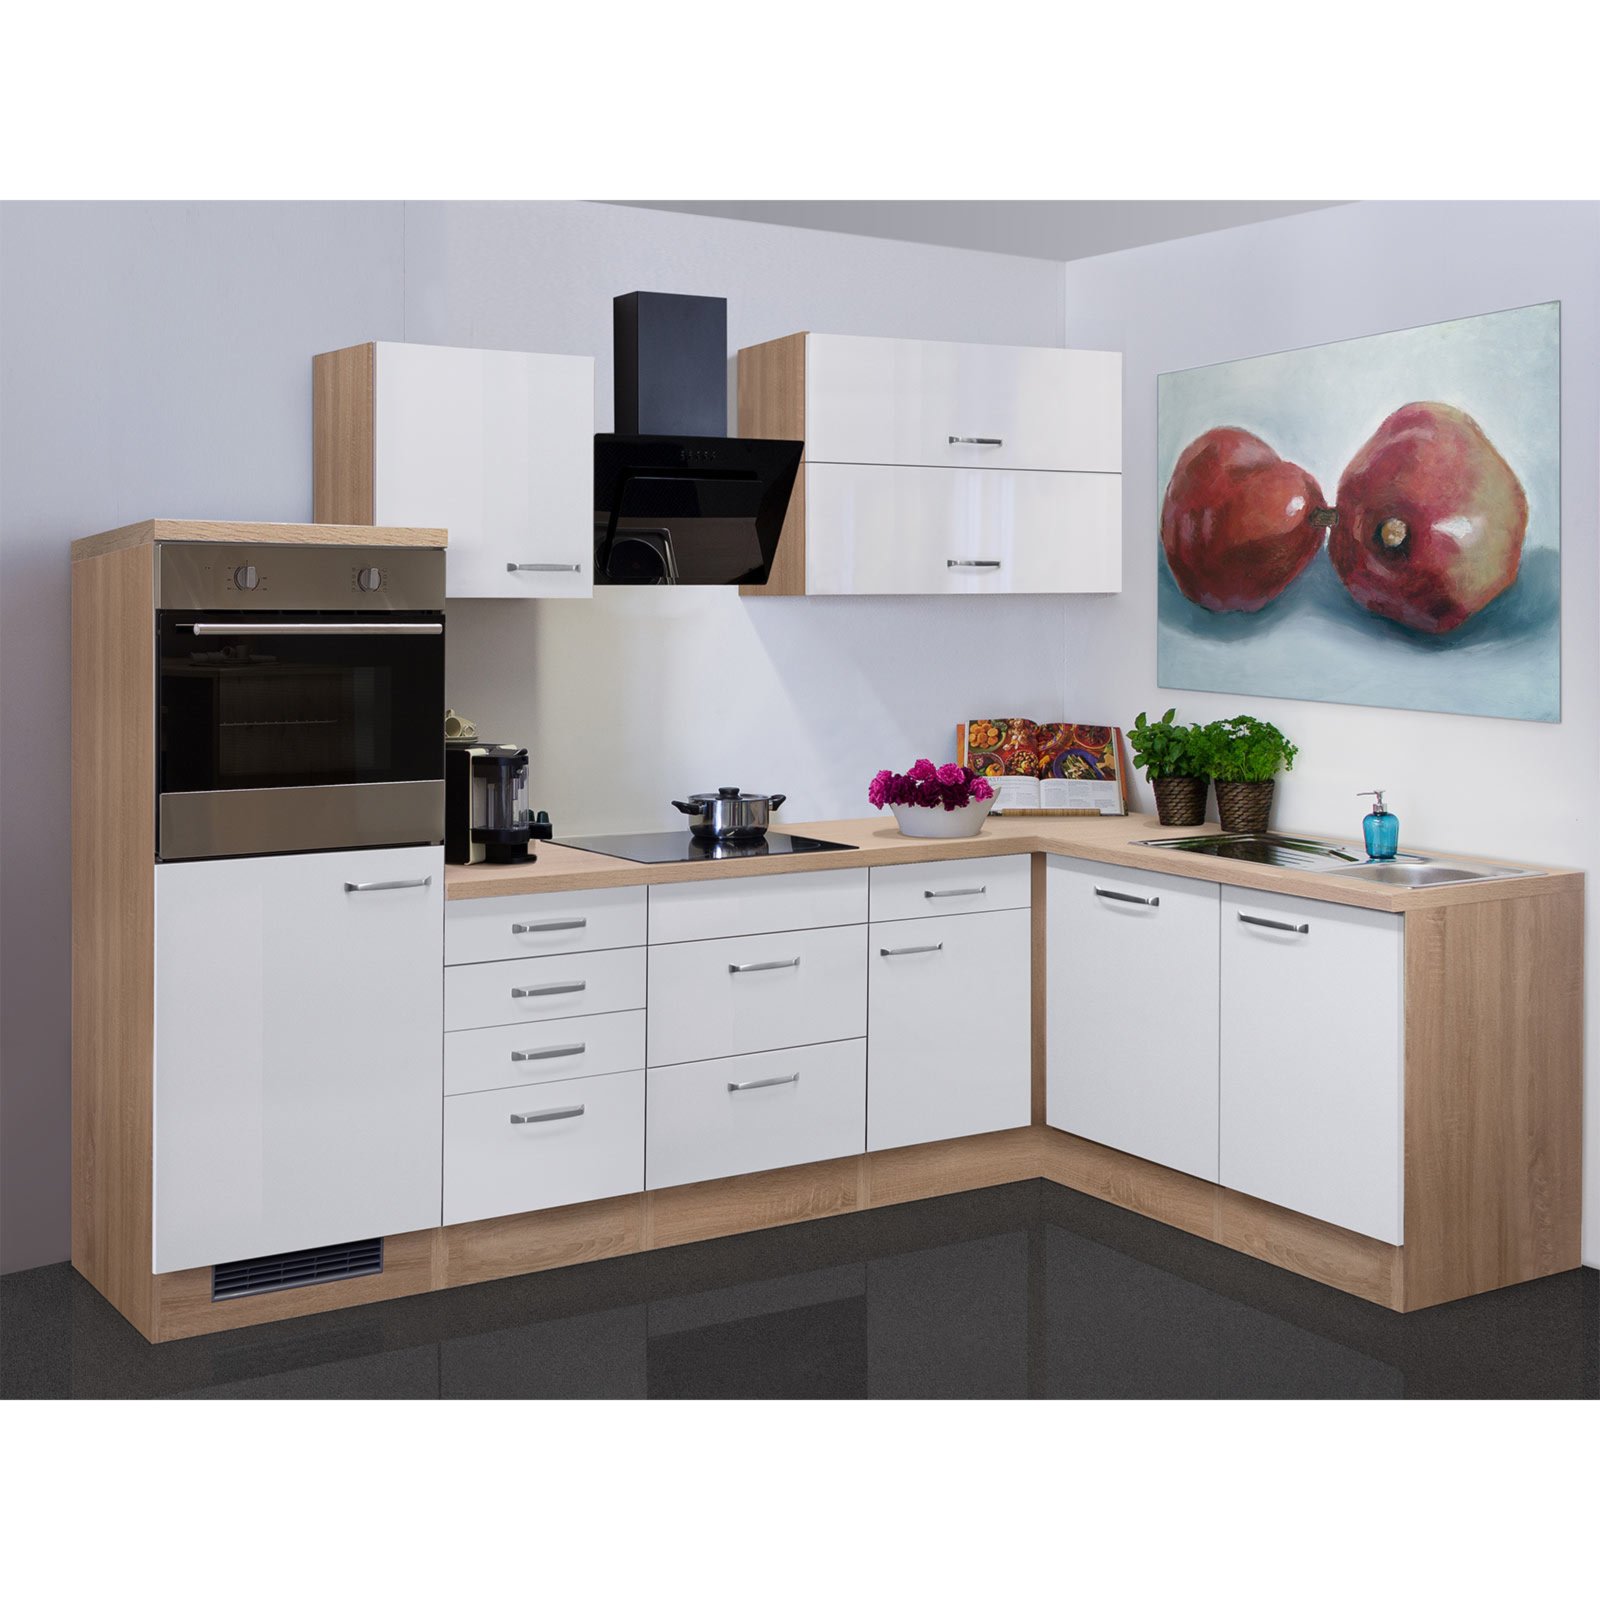 Winkelküche VALERO - weiß Hochglanz-Sonoma Eiche - mit E-Geräten - 280x170  cm | Online bei ROLLER kaufen